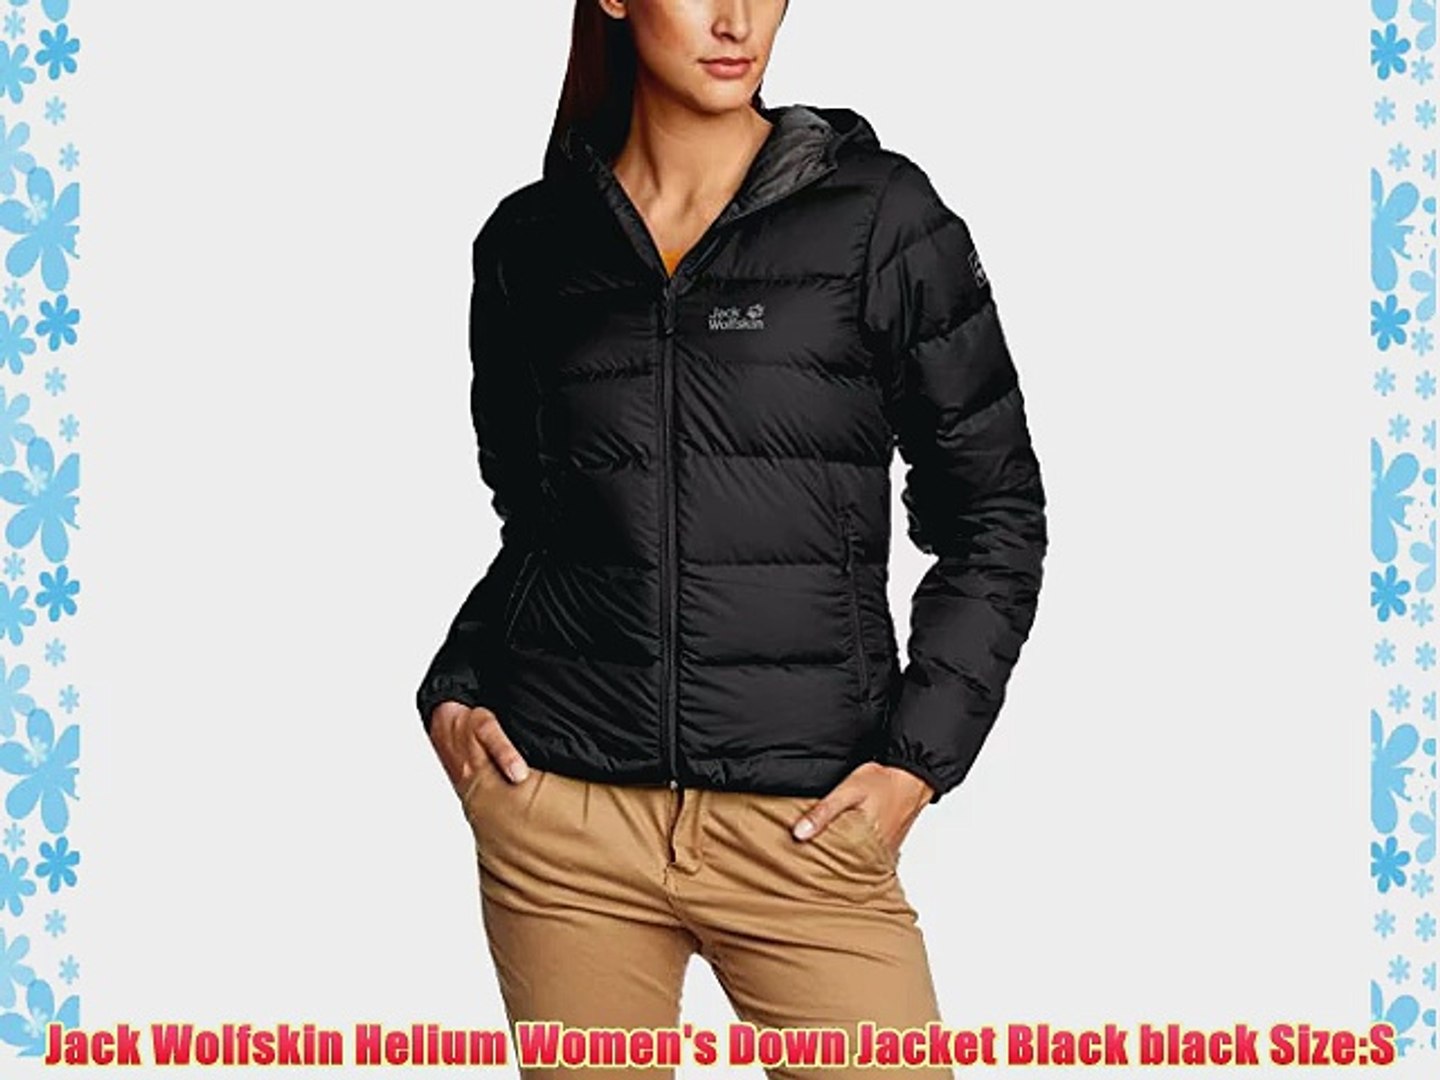 Jack Wolfskin Helium Women's Jacket Size:S - video